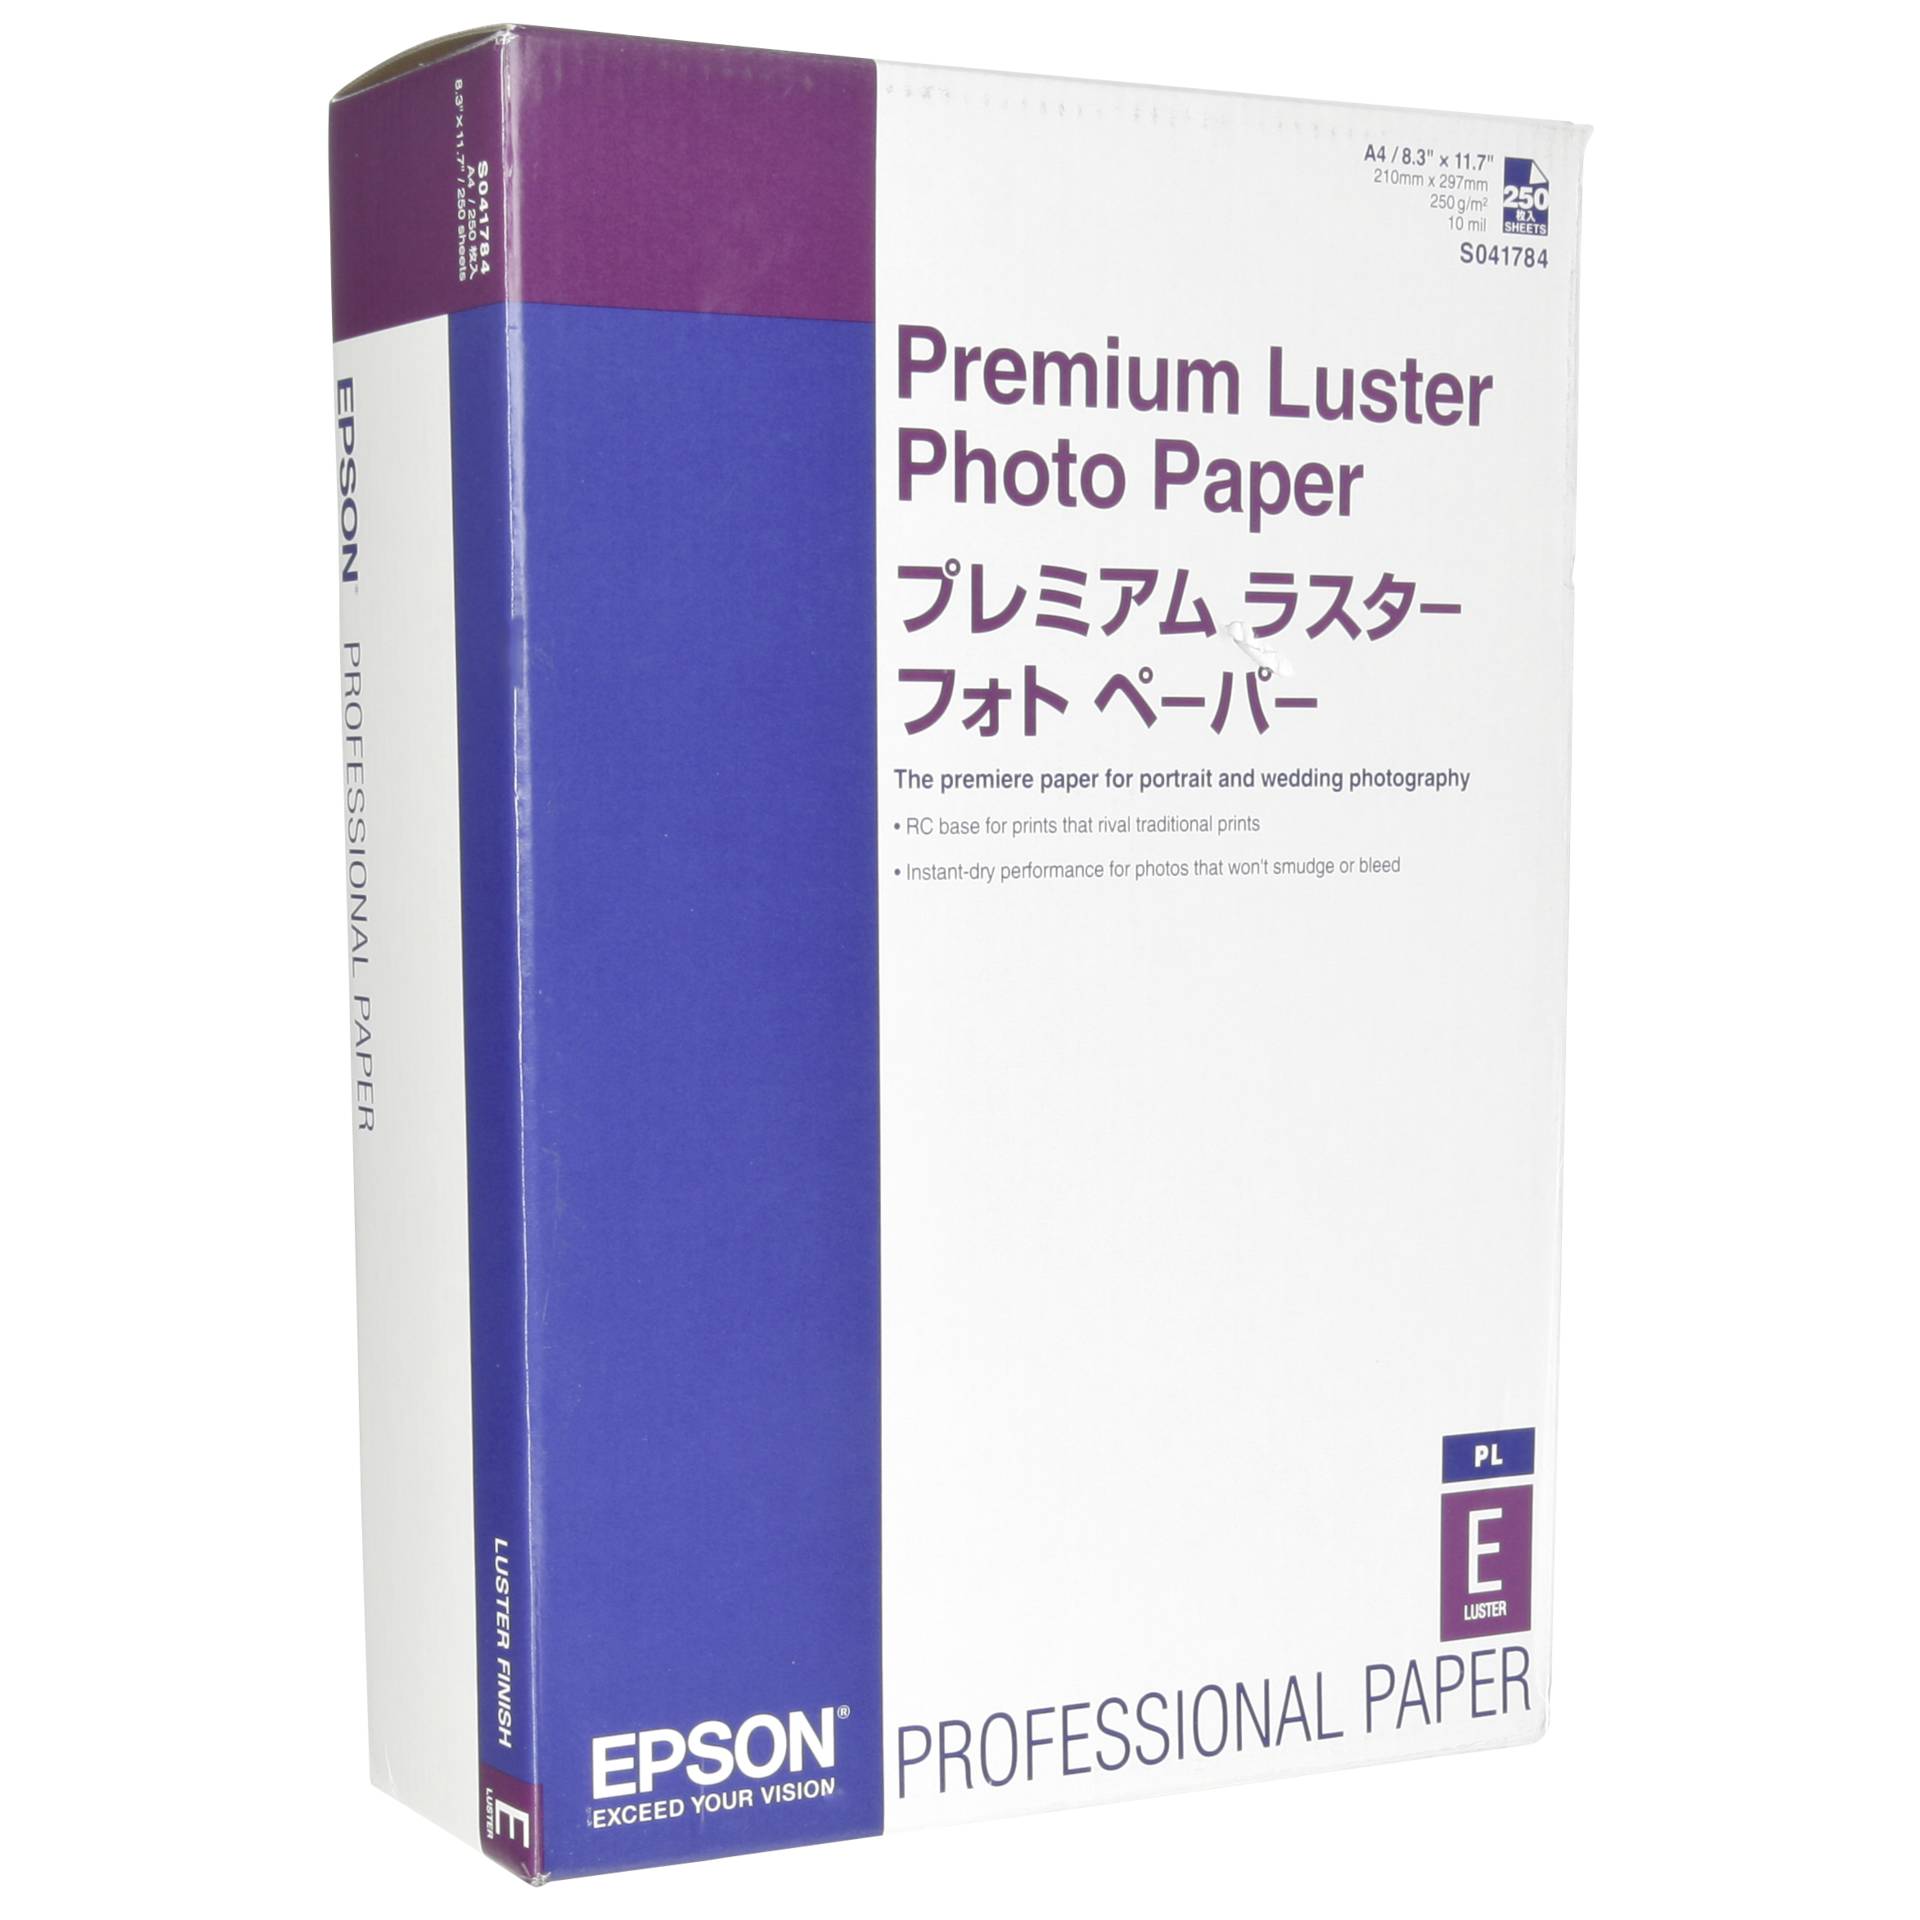 scheuren nederlaag stel voor Epson -Premium Luster -glänzend Fotopapier -A4 (210 x 297 mm) -250 Blatt  (C13S041784) -Epson Hardware/Electronic Grooves.land/Playthek